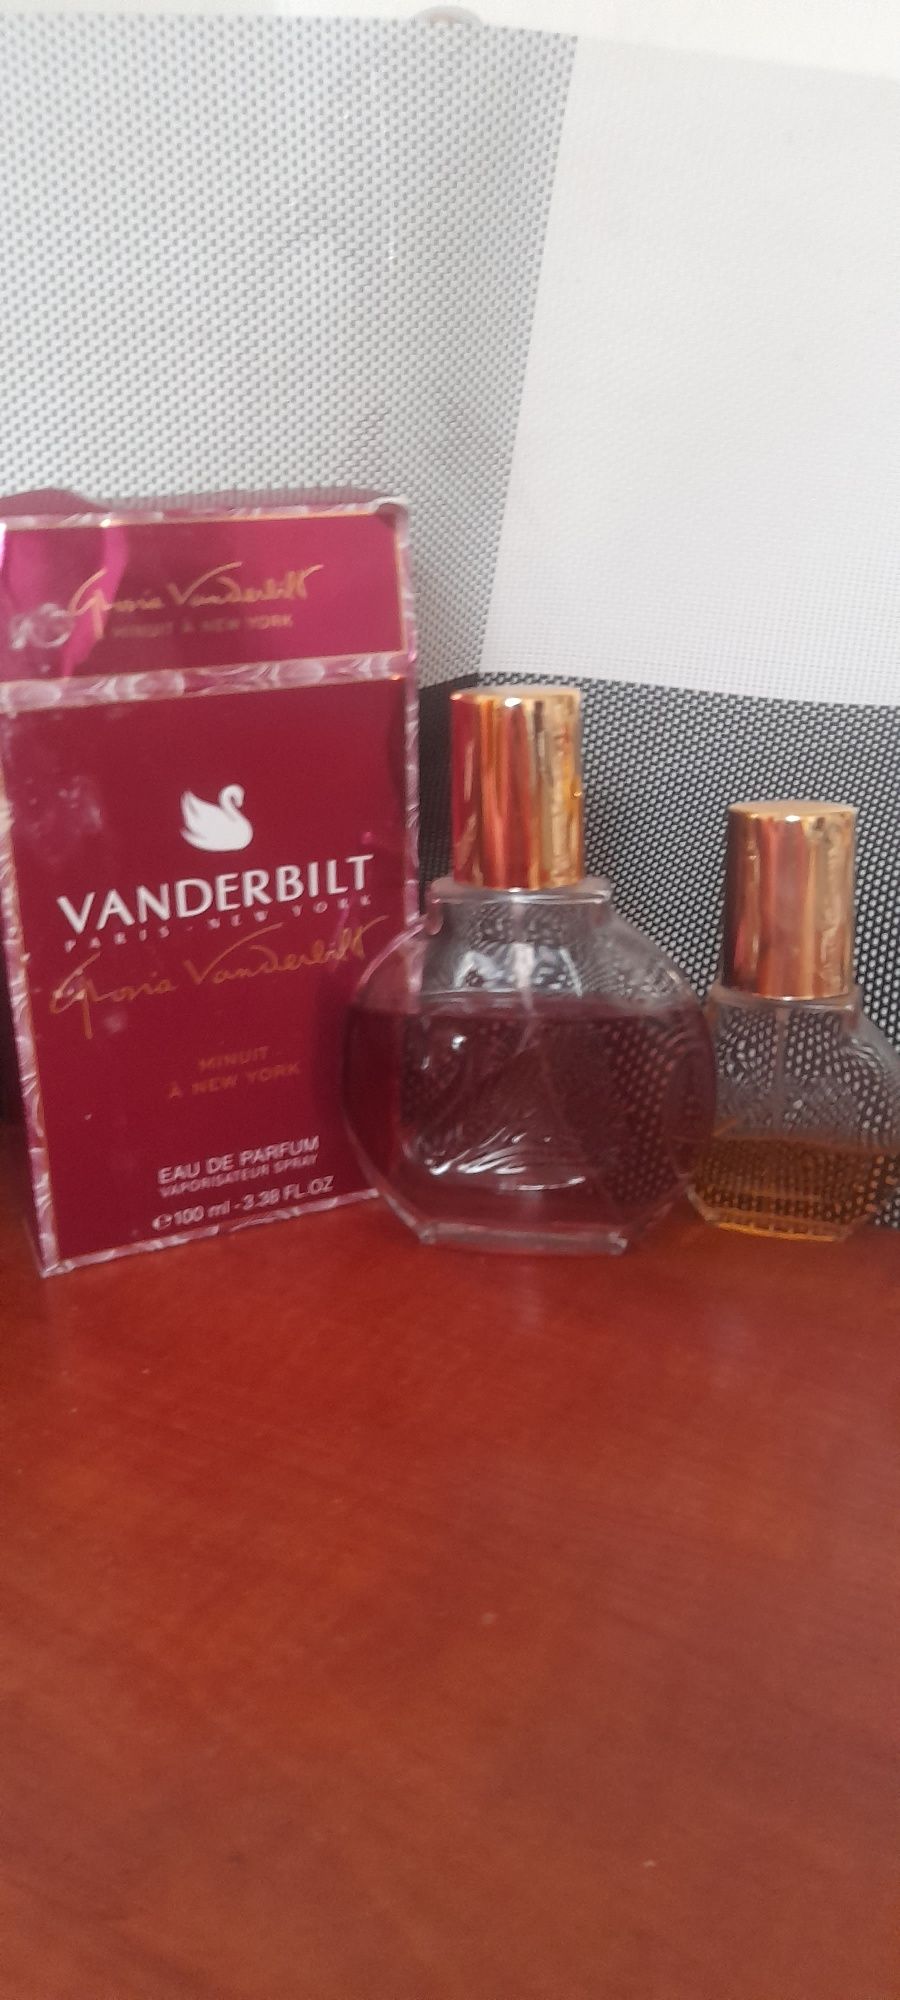 Два парфюма от Gloria Vanderbilt.